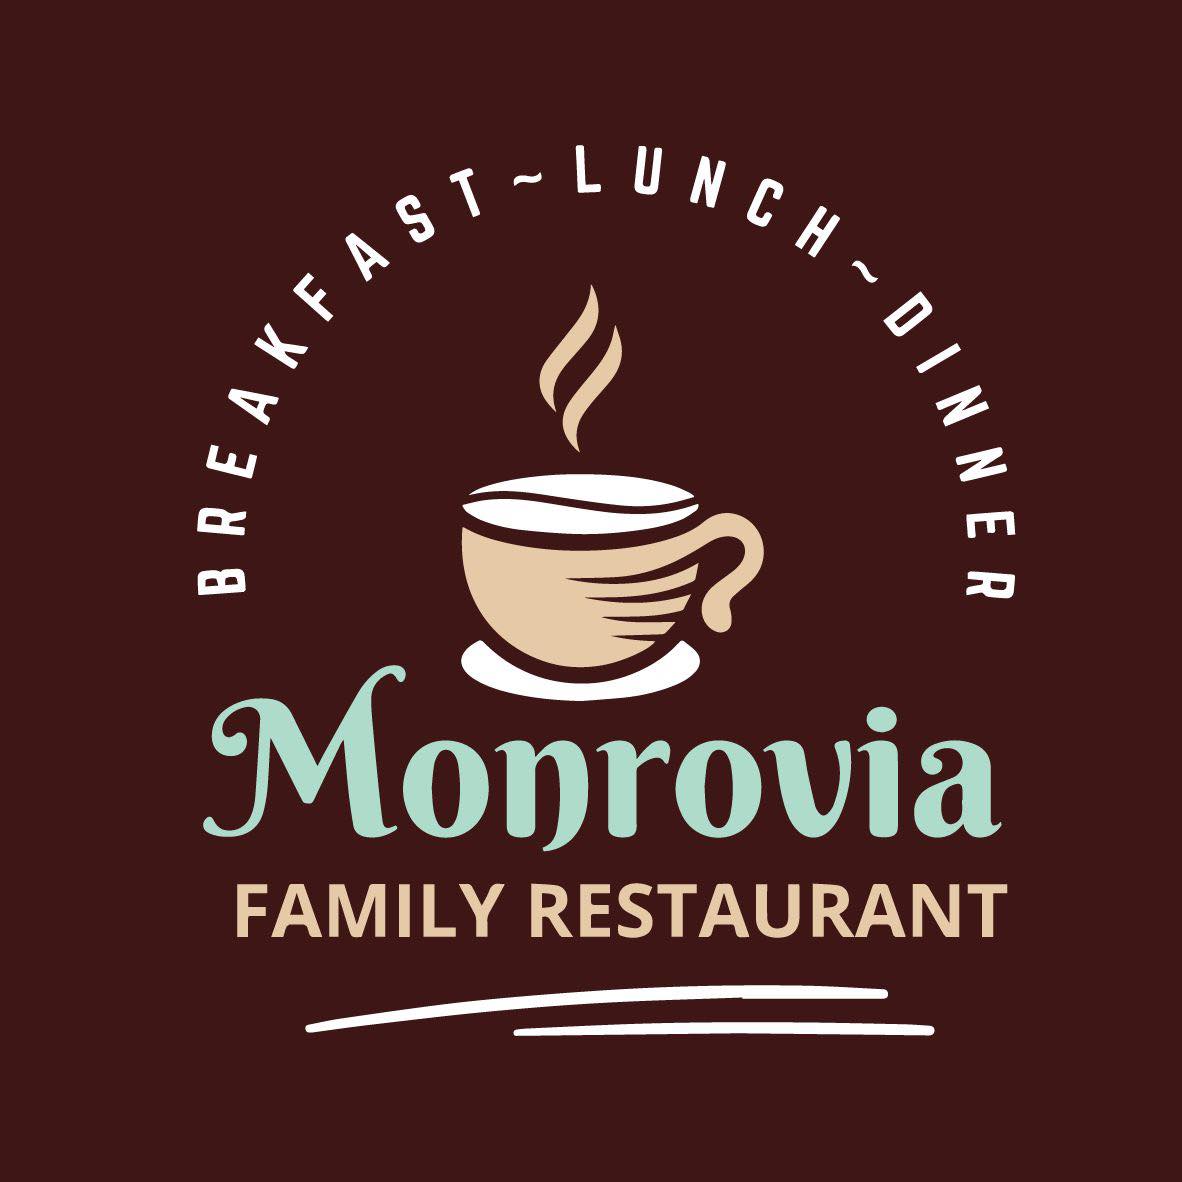 Monrovia Family Restaurant